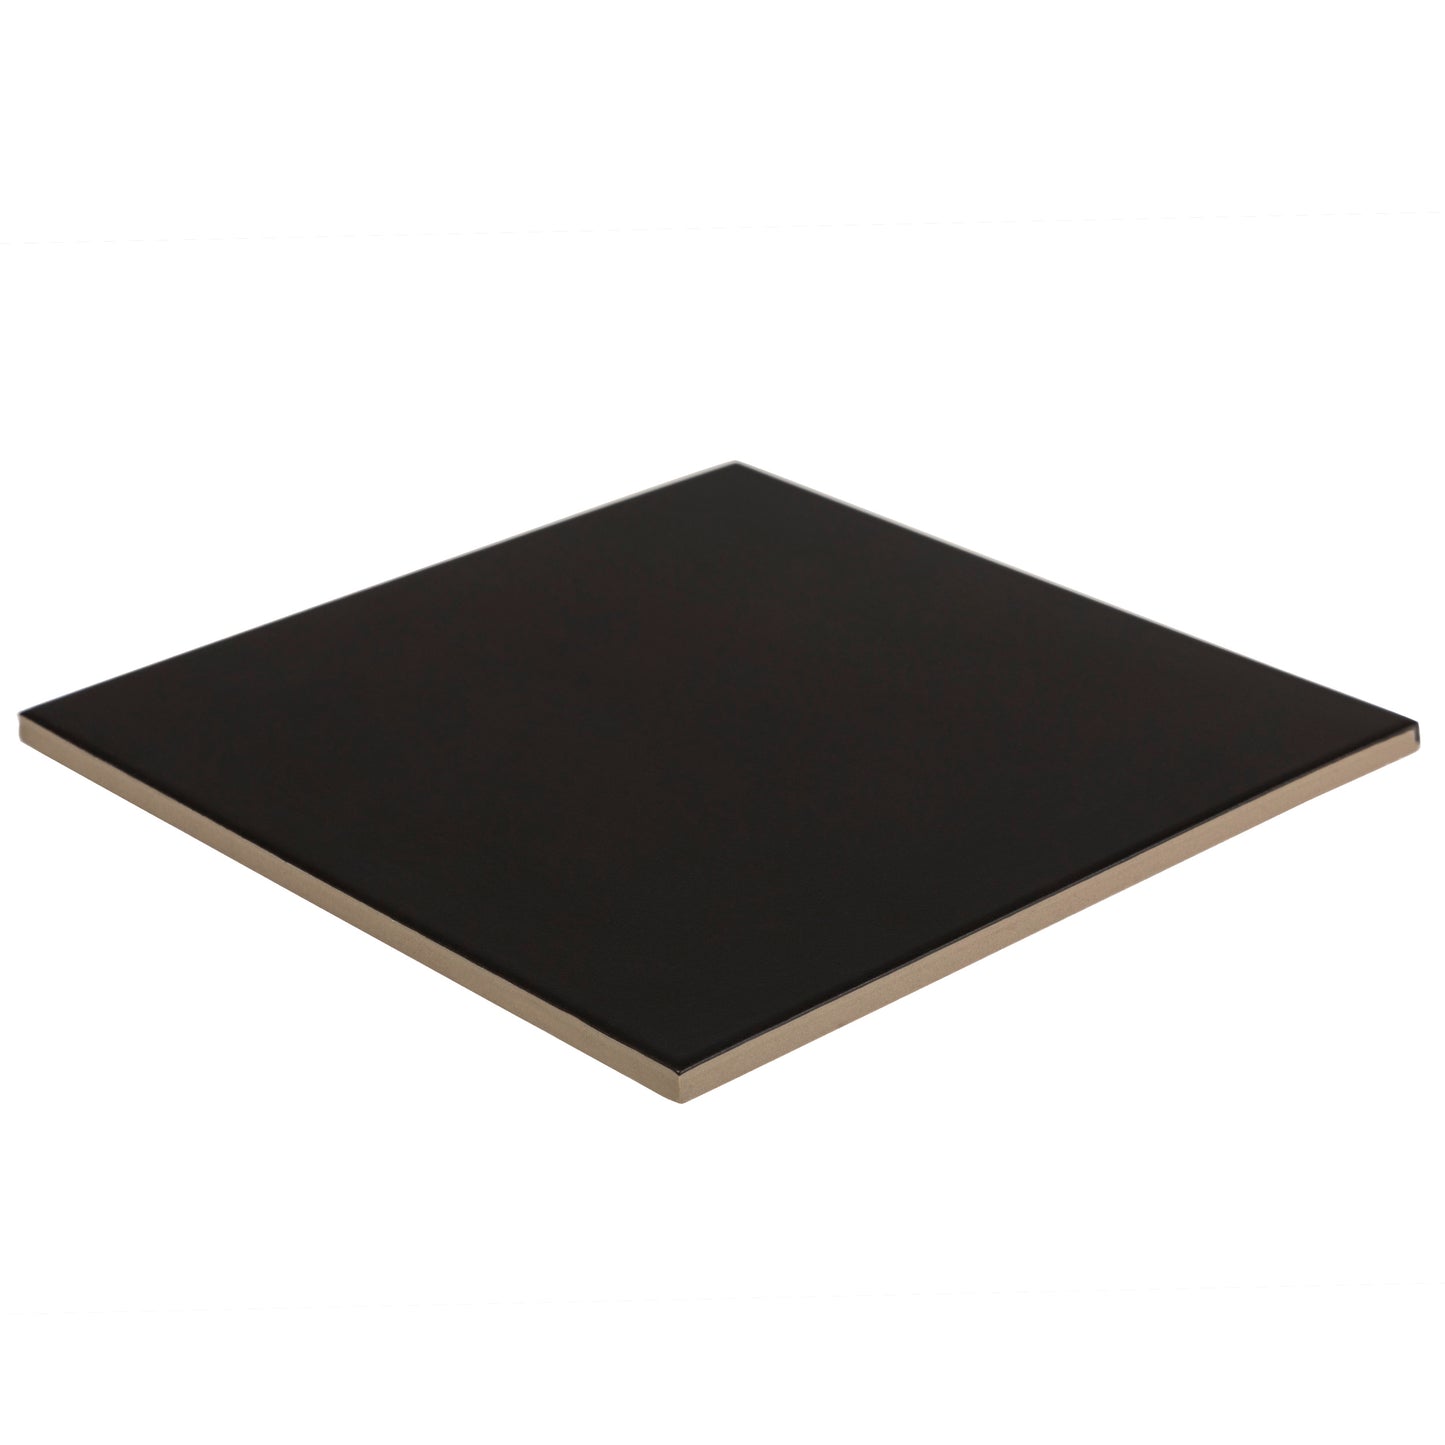 9x9 Square Black porcelain tile - Industry Tile